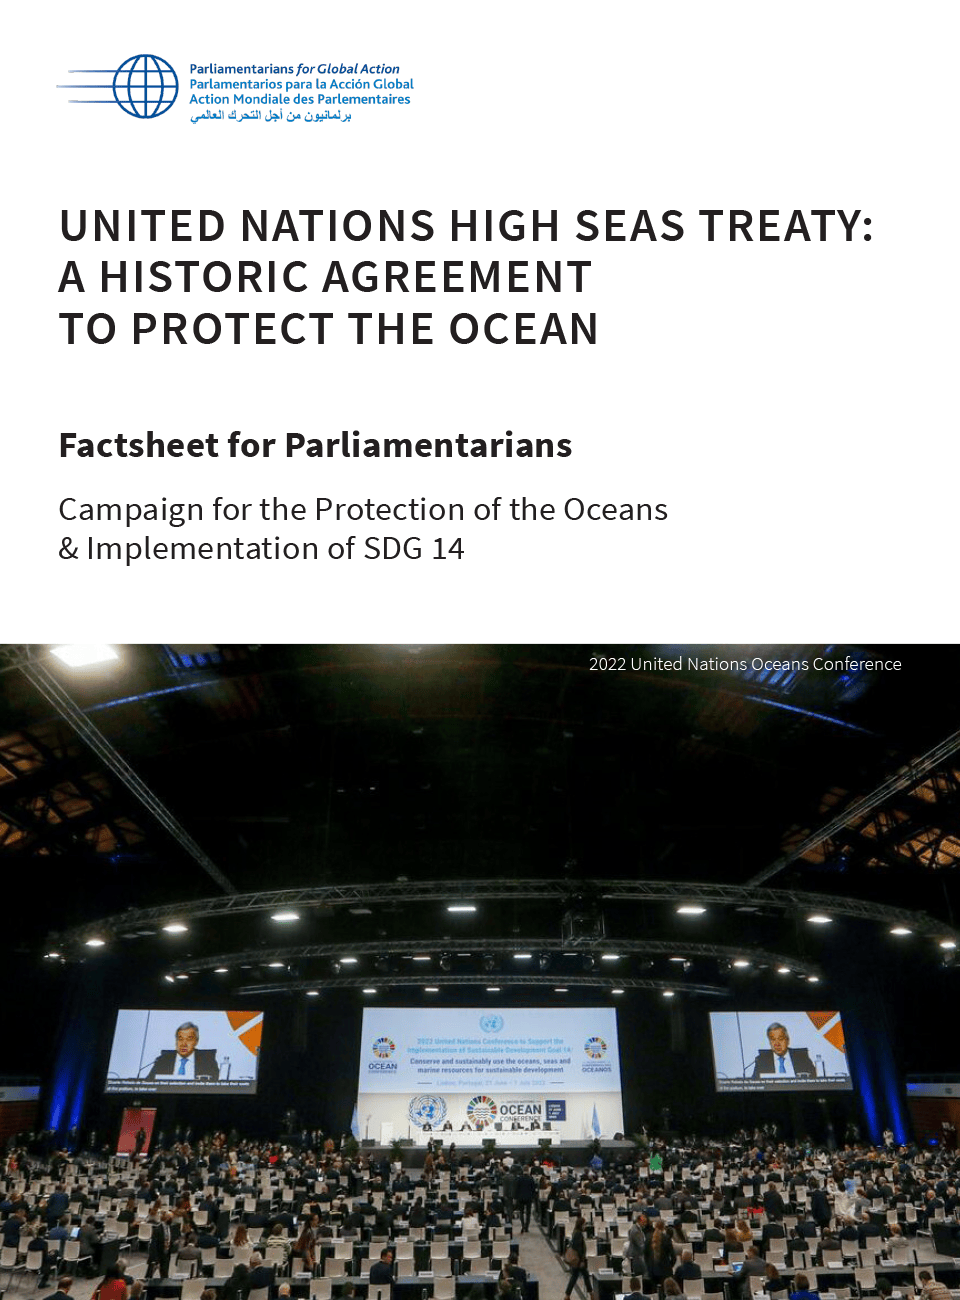 Hoja Informativa Para Parlamentarios: El Tratado De Alta Mar: Un Acuerdo Histórico Para Proteger El Océano